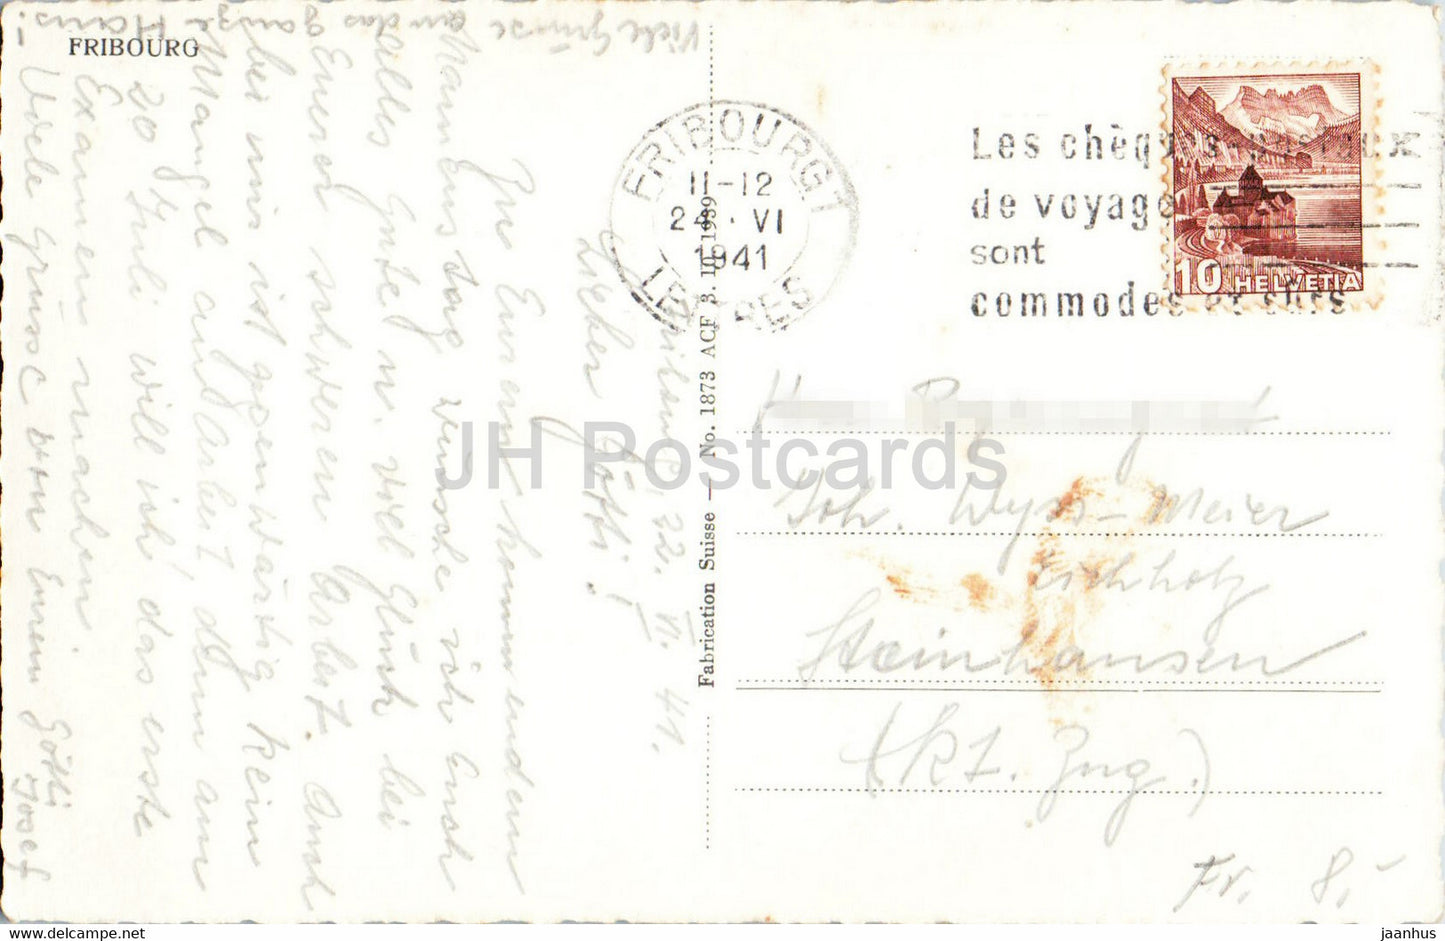 Freiburg – 1873 – alte Postkarte – 1941 – Schweiz – gebraucht